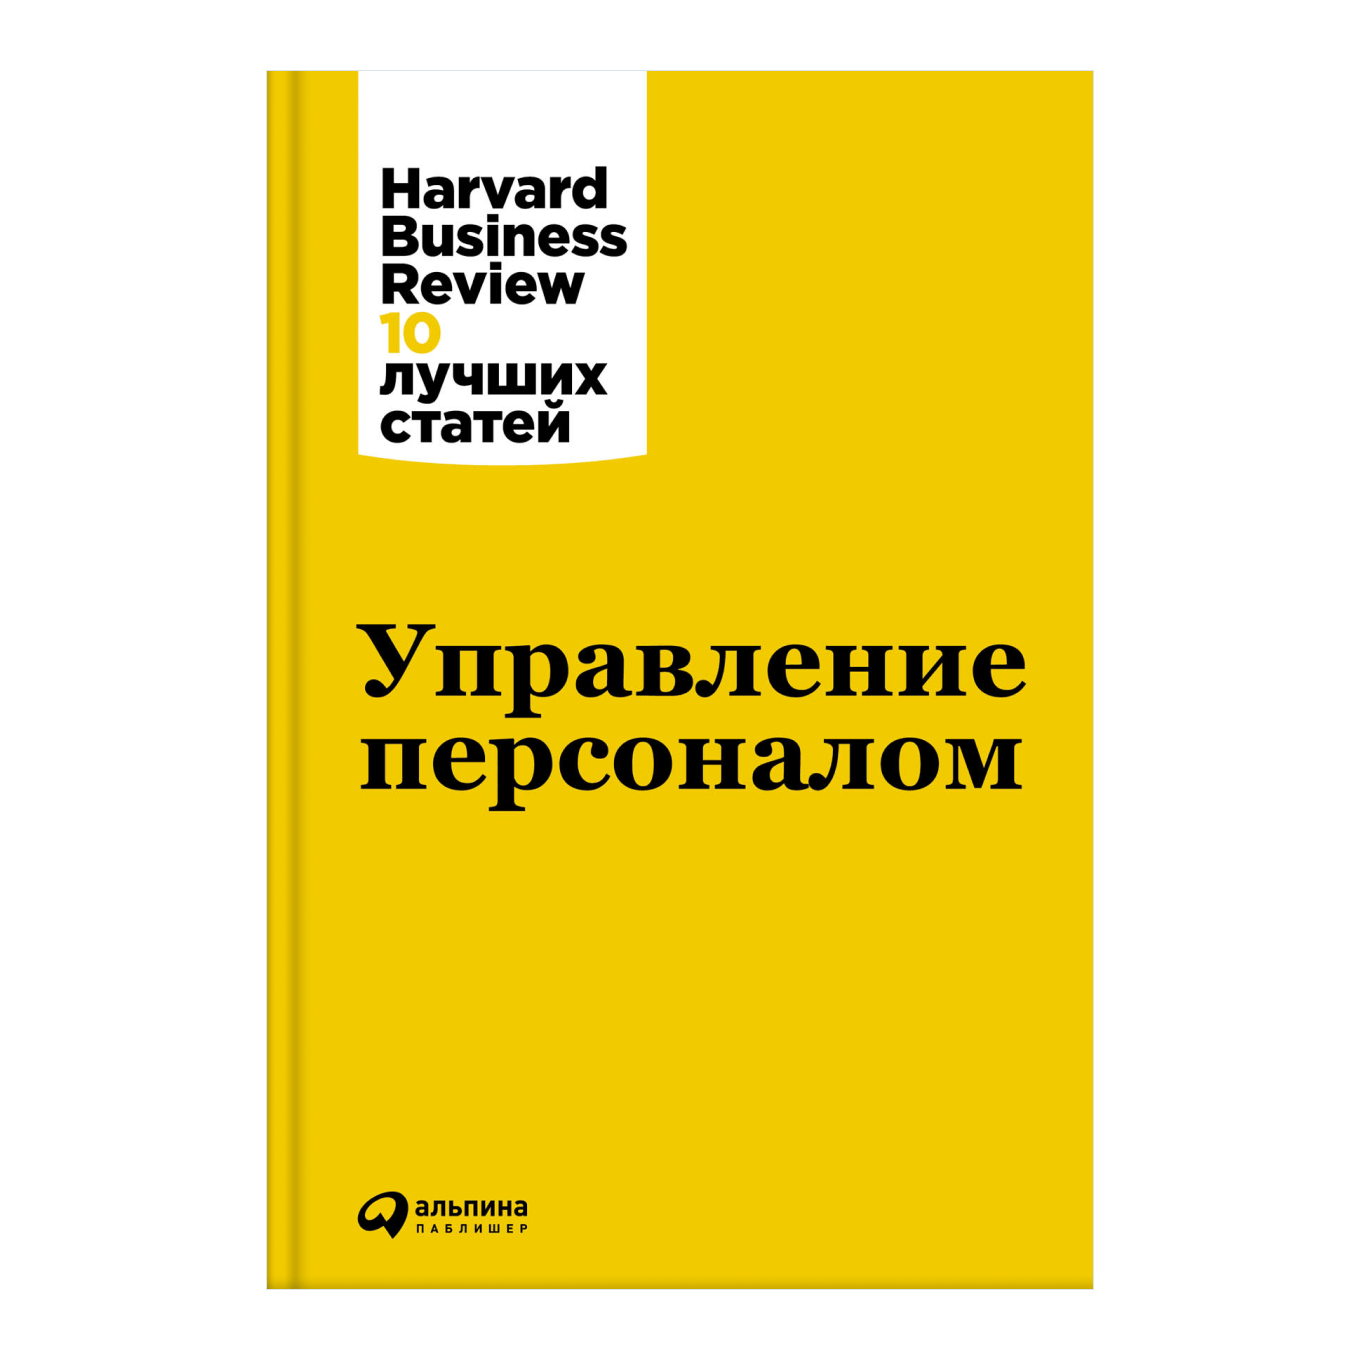 Книга Harvard Business Review «Управление персоналом»